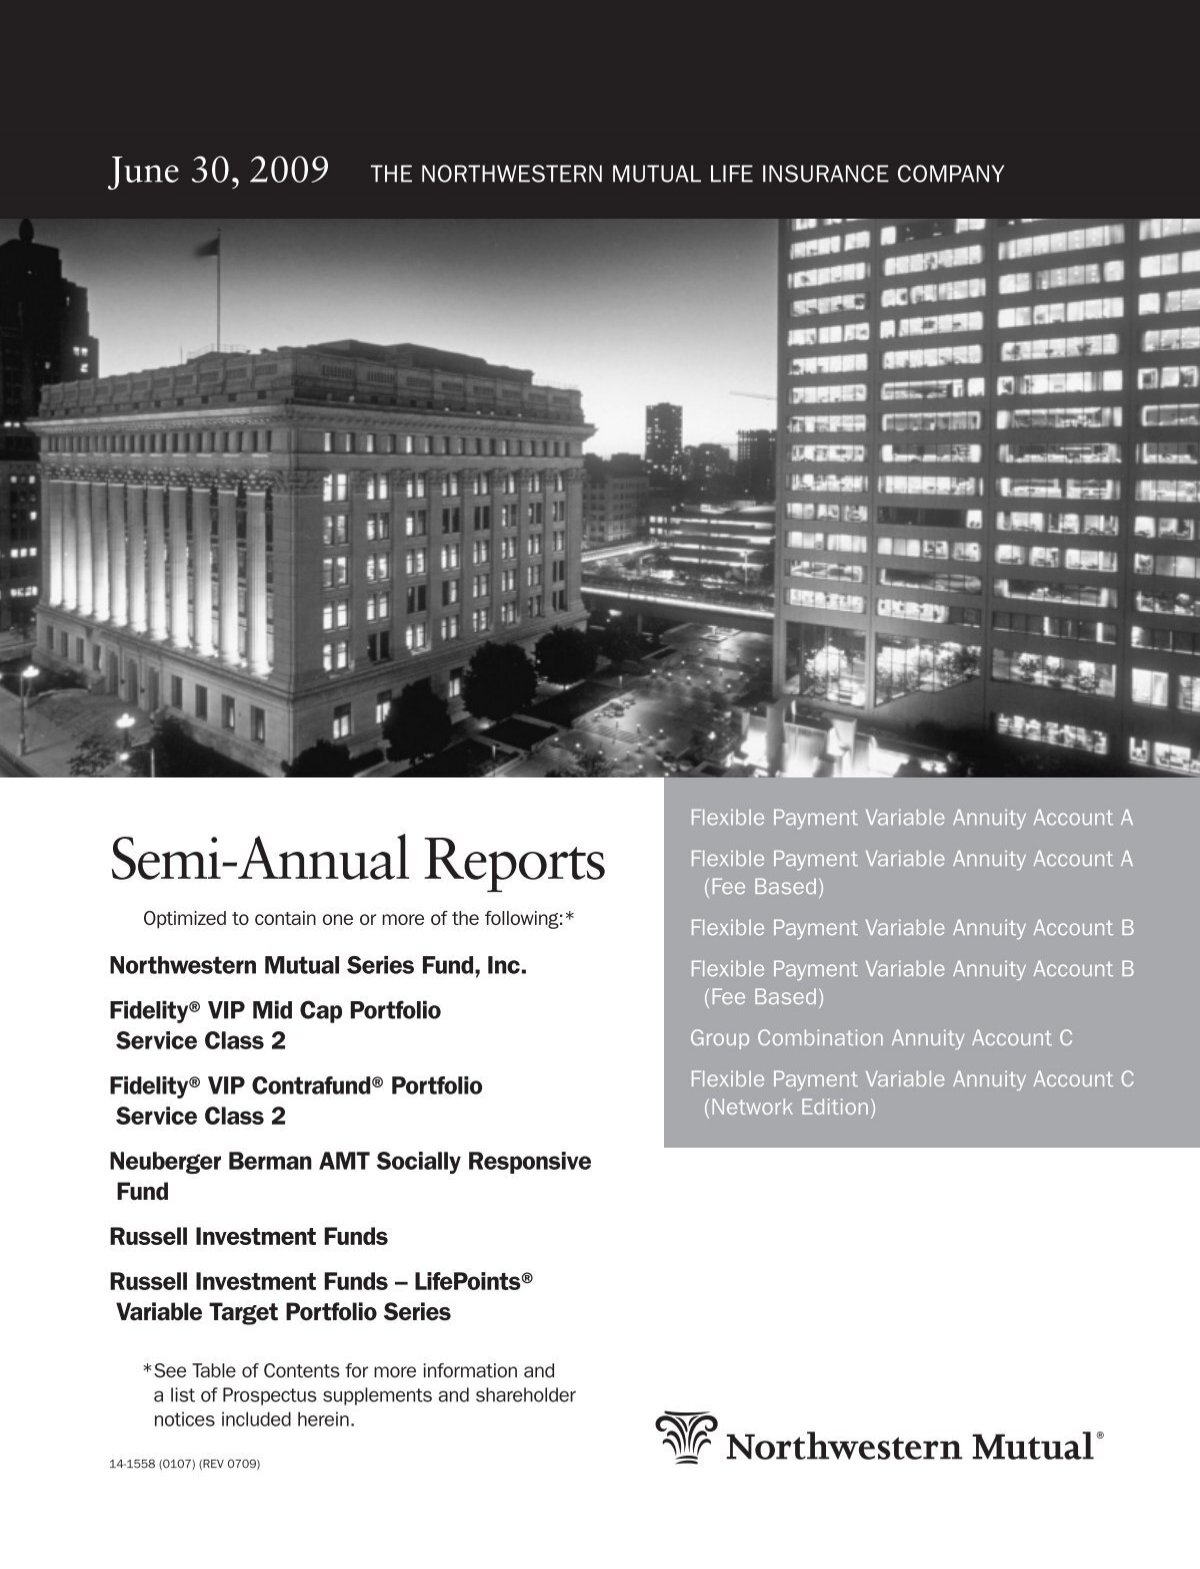 Semi-Annual Reports - Northwestern Mutual Life